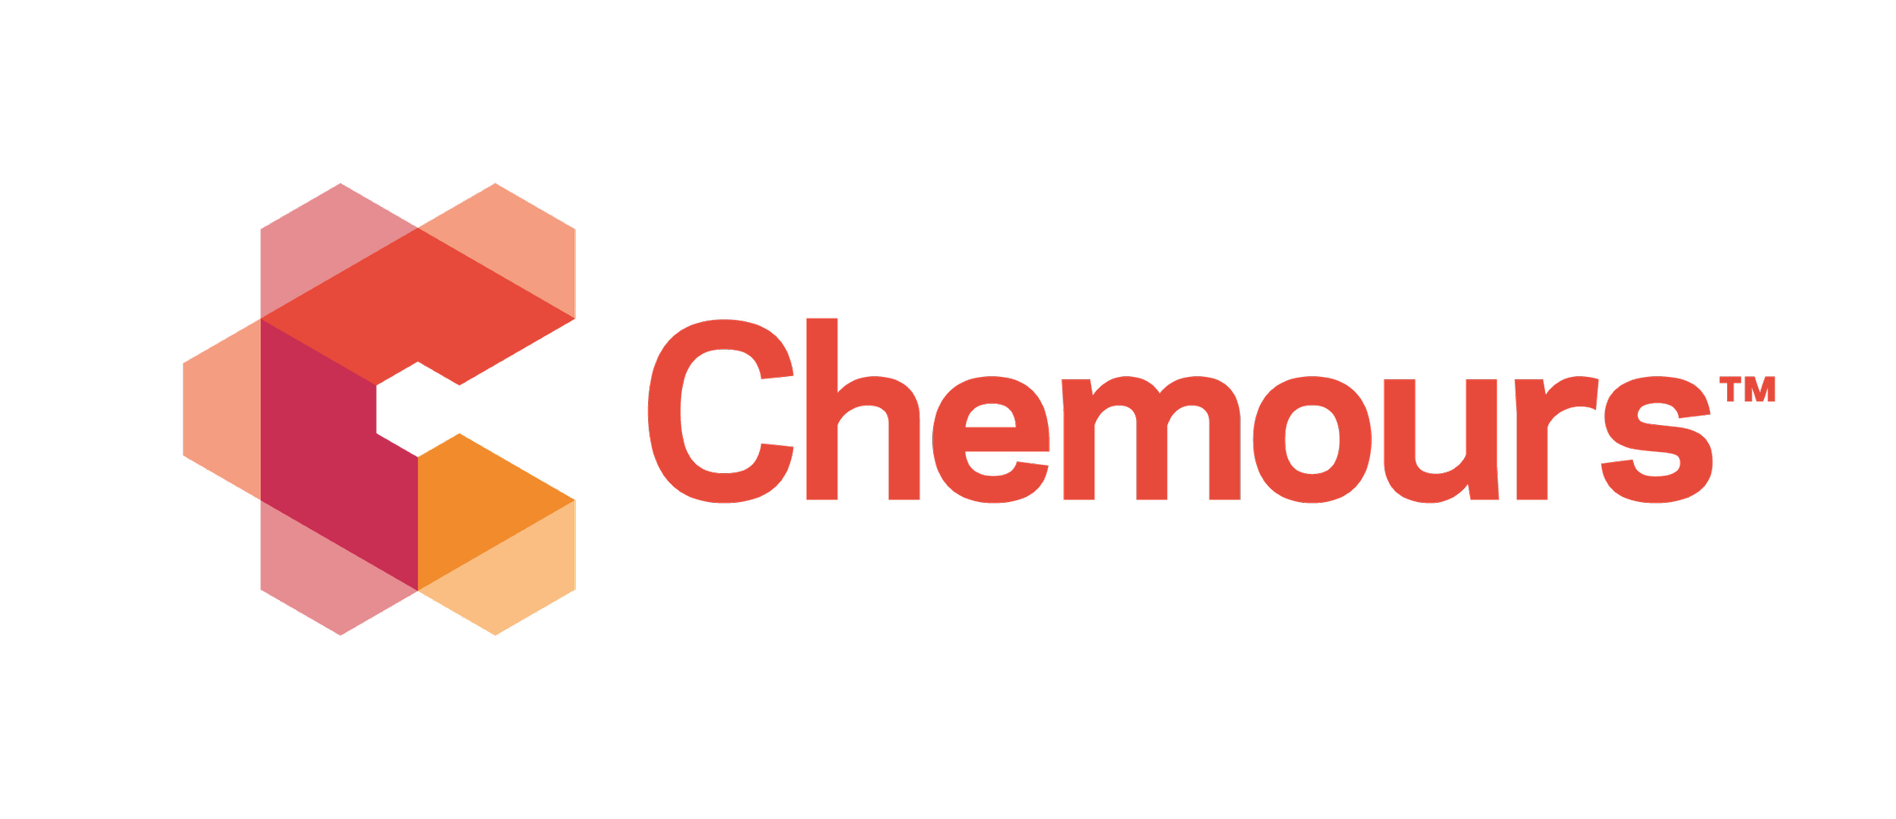 The Chemours Company Company Logo